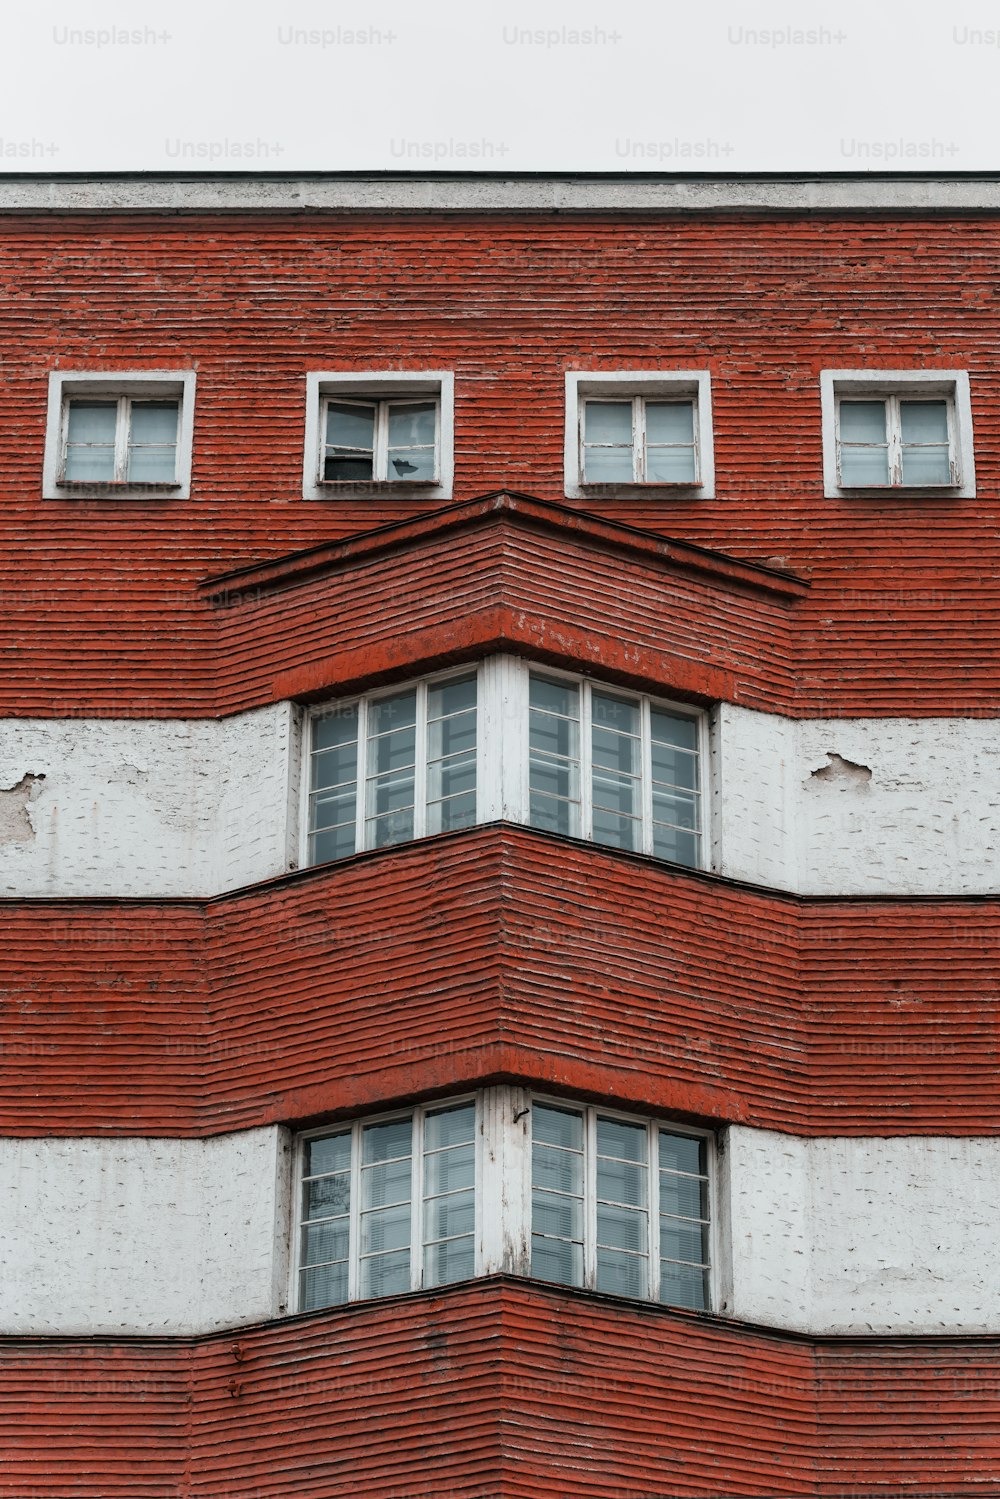 Un edificio de ladrillo rojo con ventanas blancas y un reloj